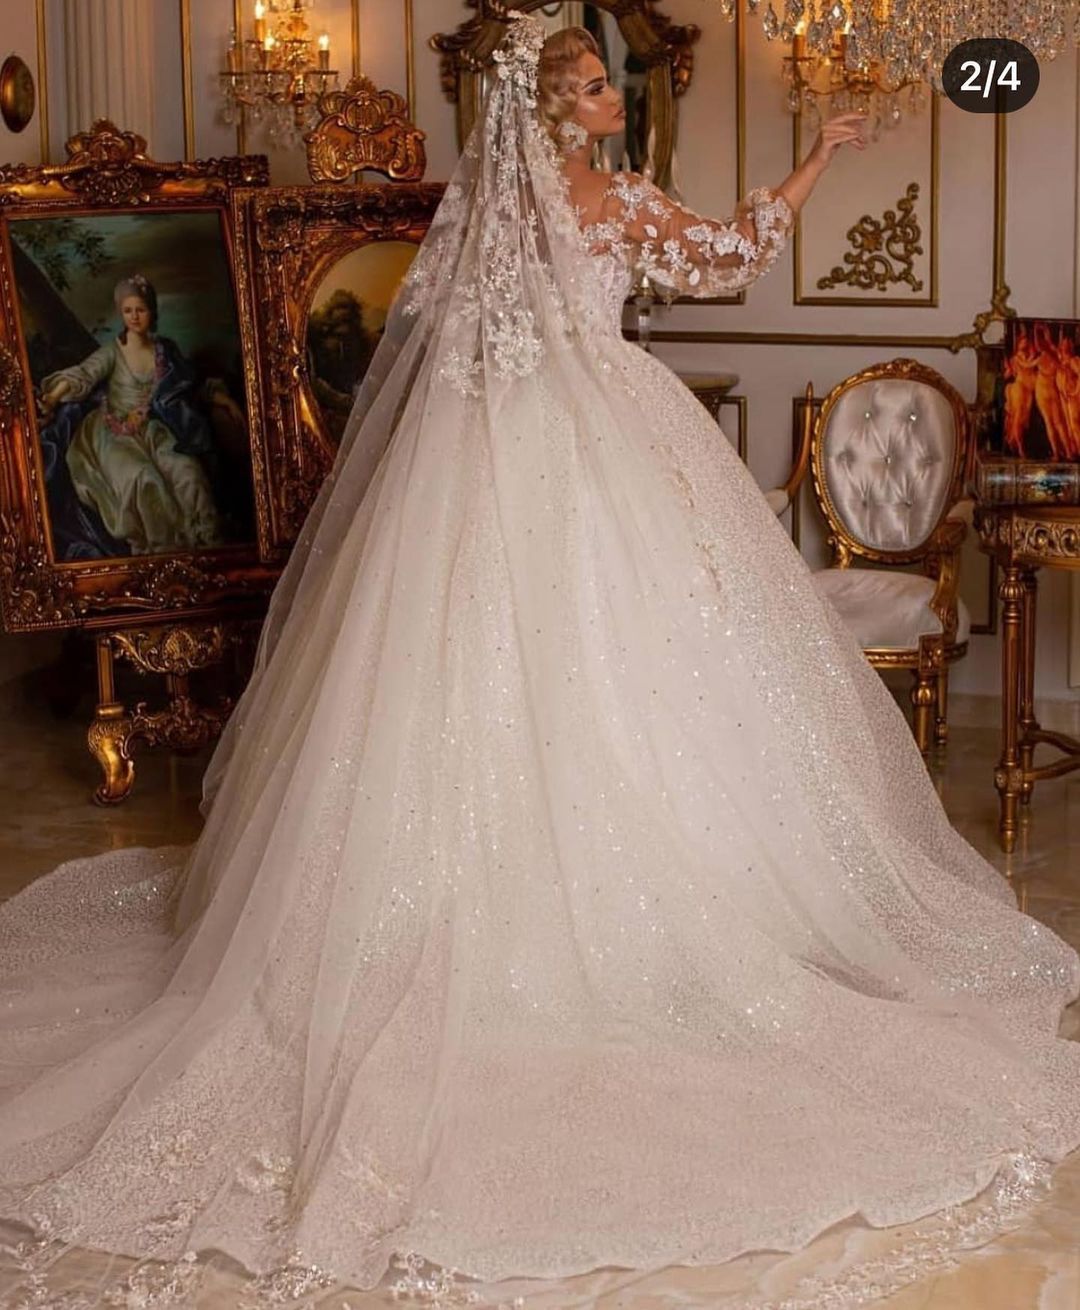 Babyonlinedress.de bietet Große Auswahl von Luxus Hochzeitskleider mit Ärmel online. Brautkleider Prinzessin Glitzer für Sie zur Hochzeit gehen.